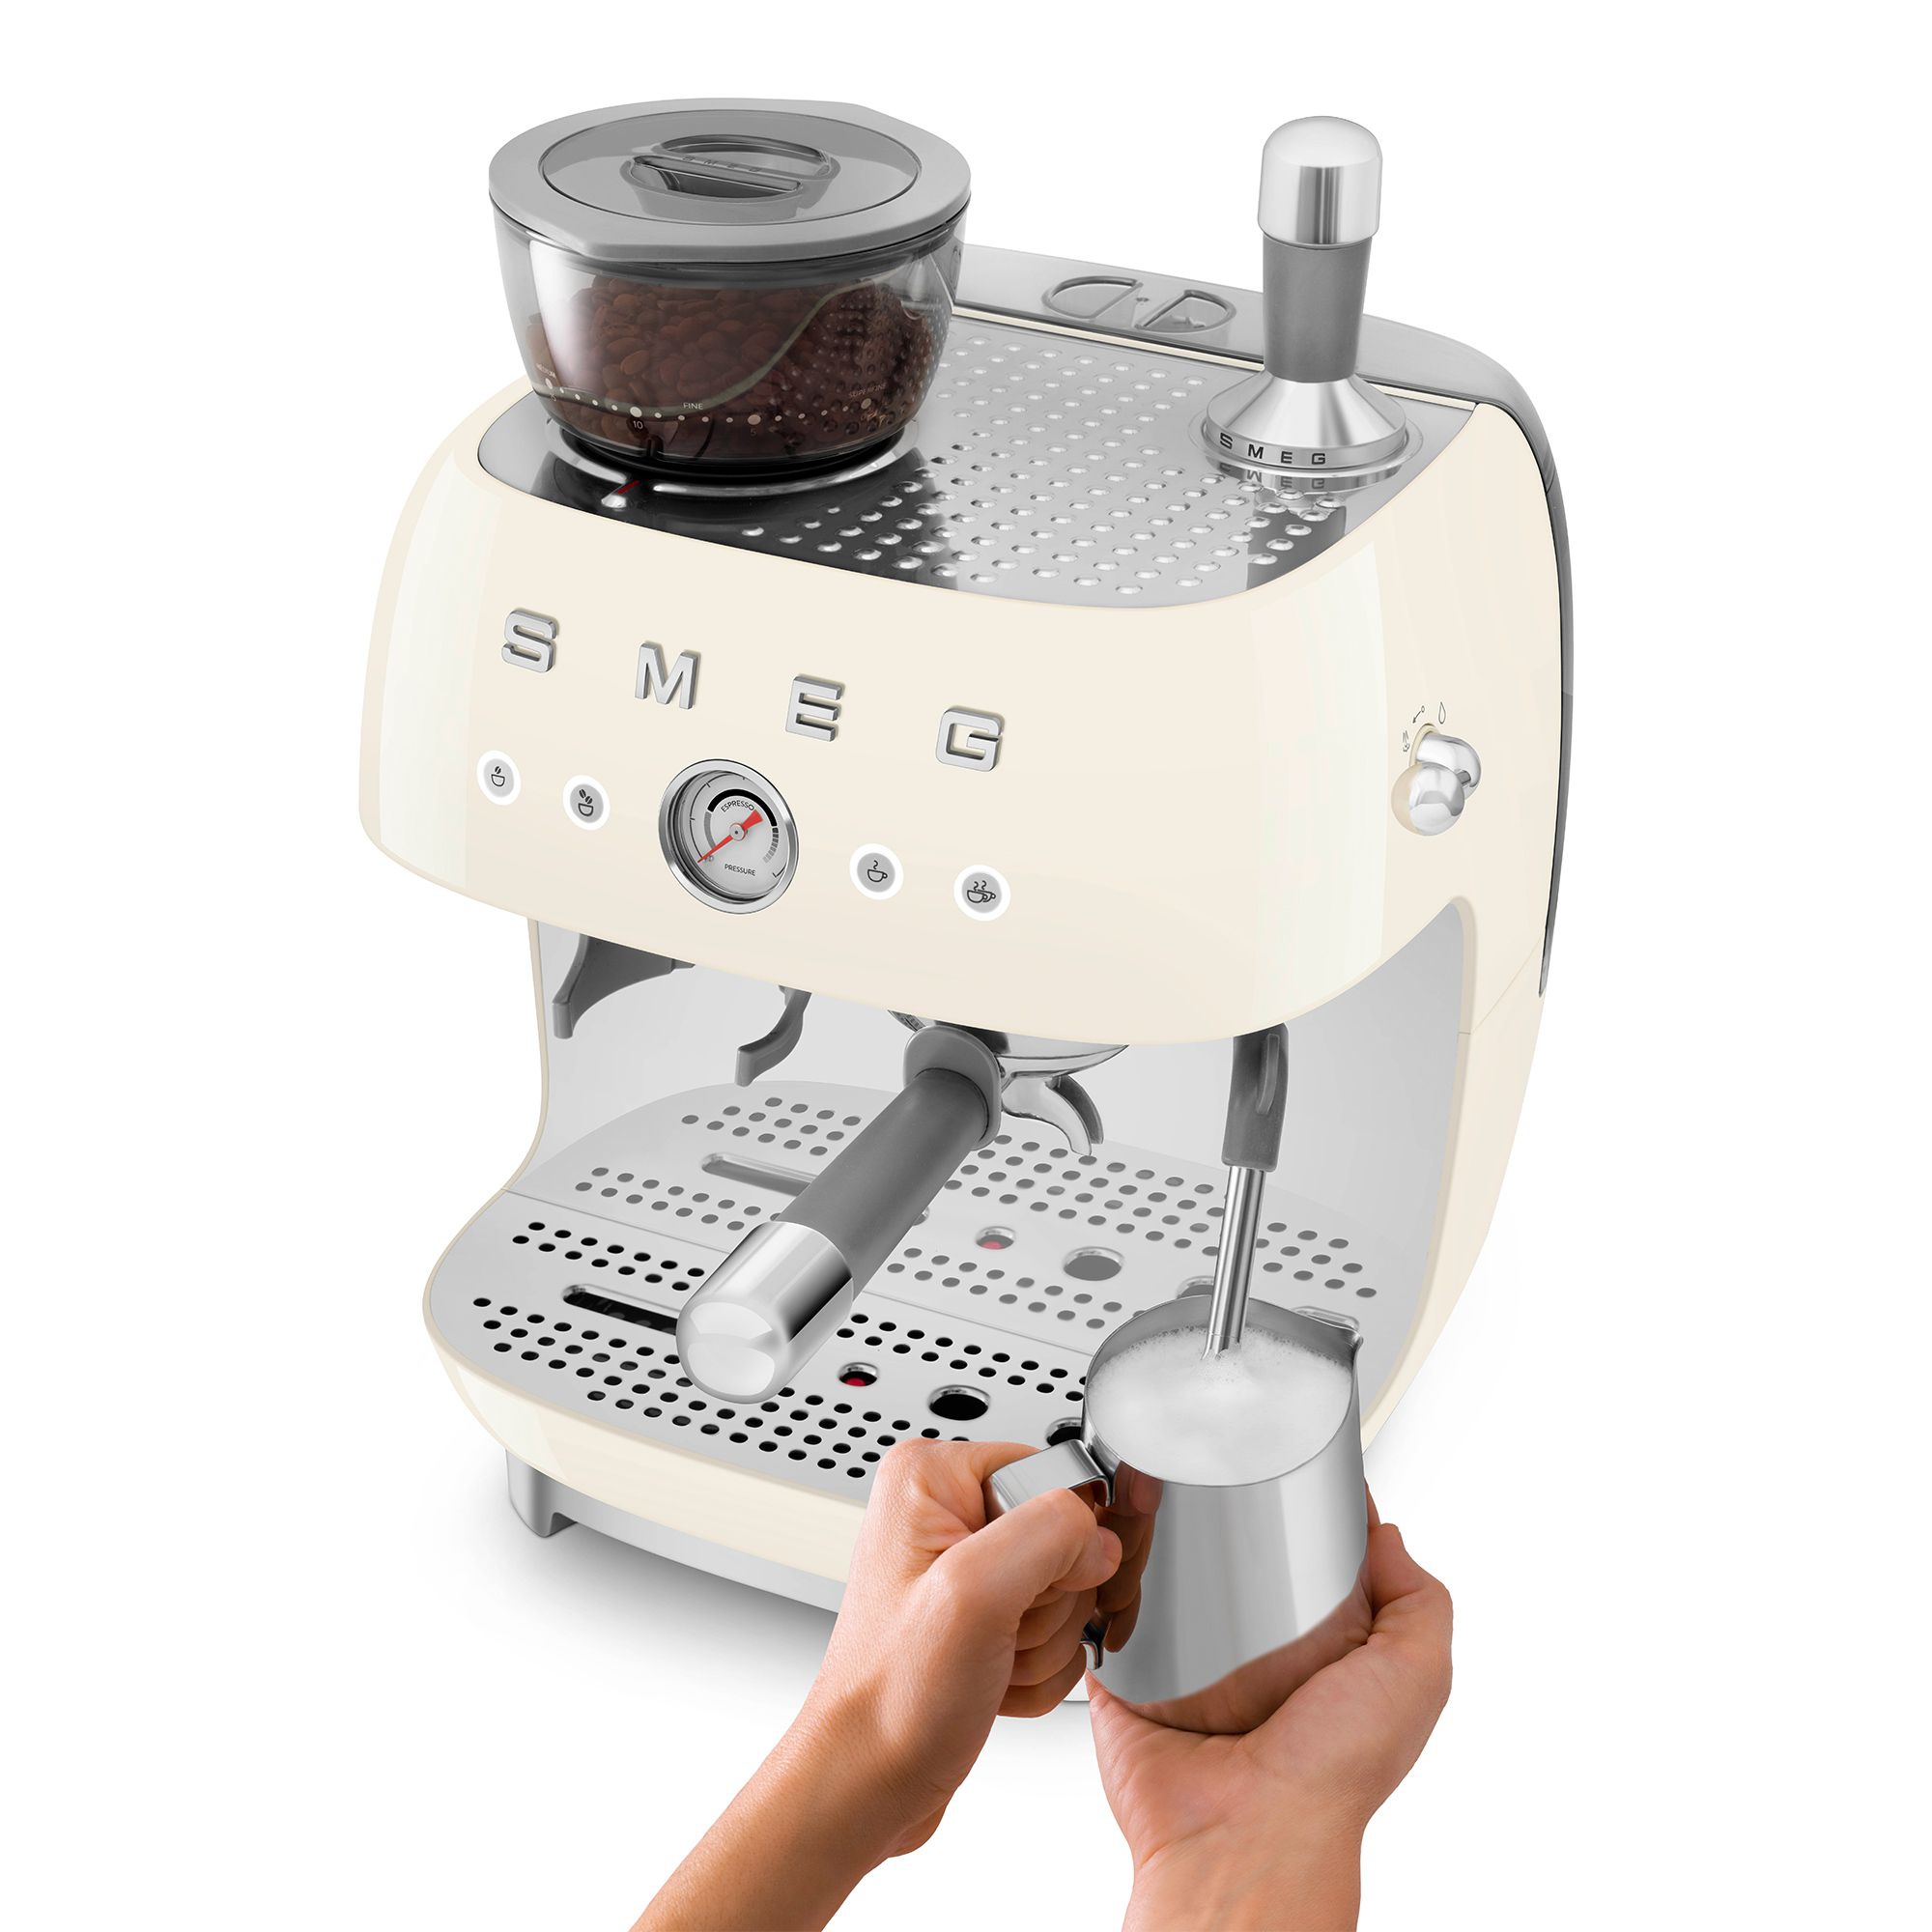 Smeg - Espresso machine with grinder - creme